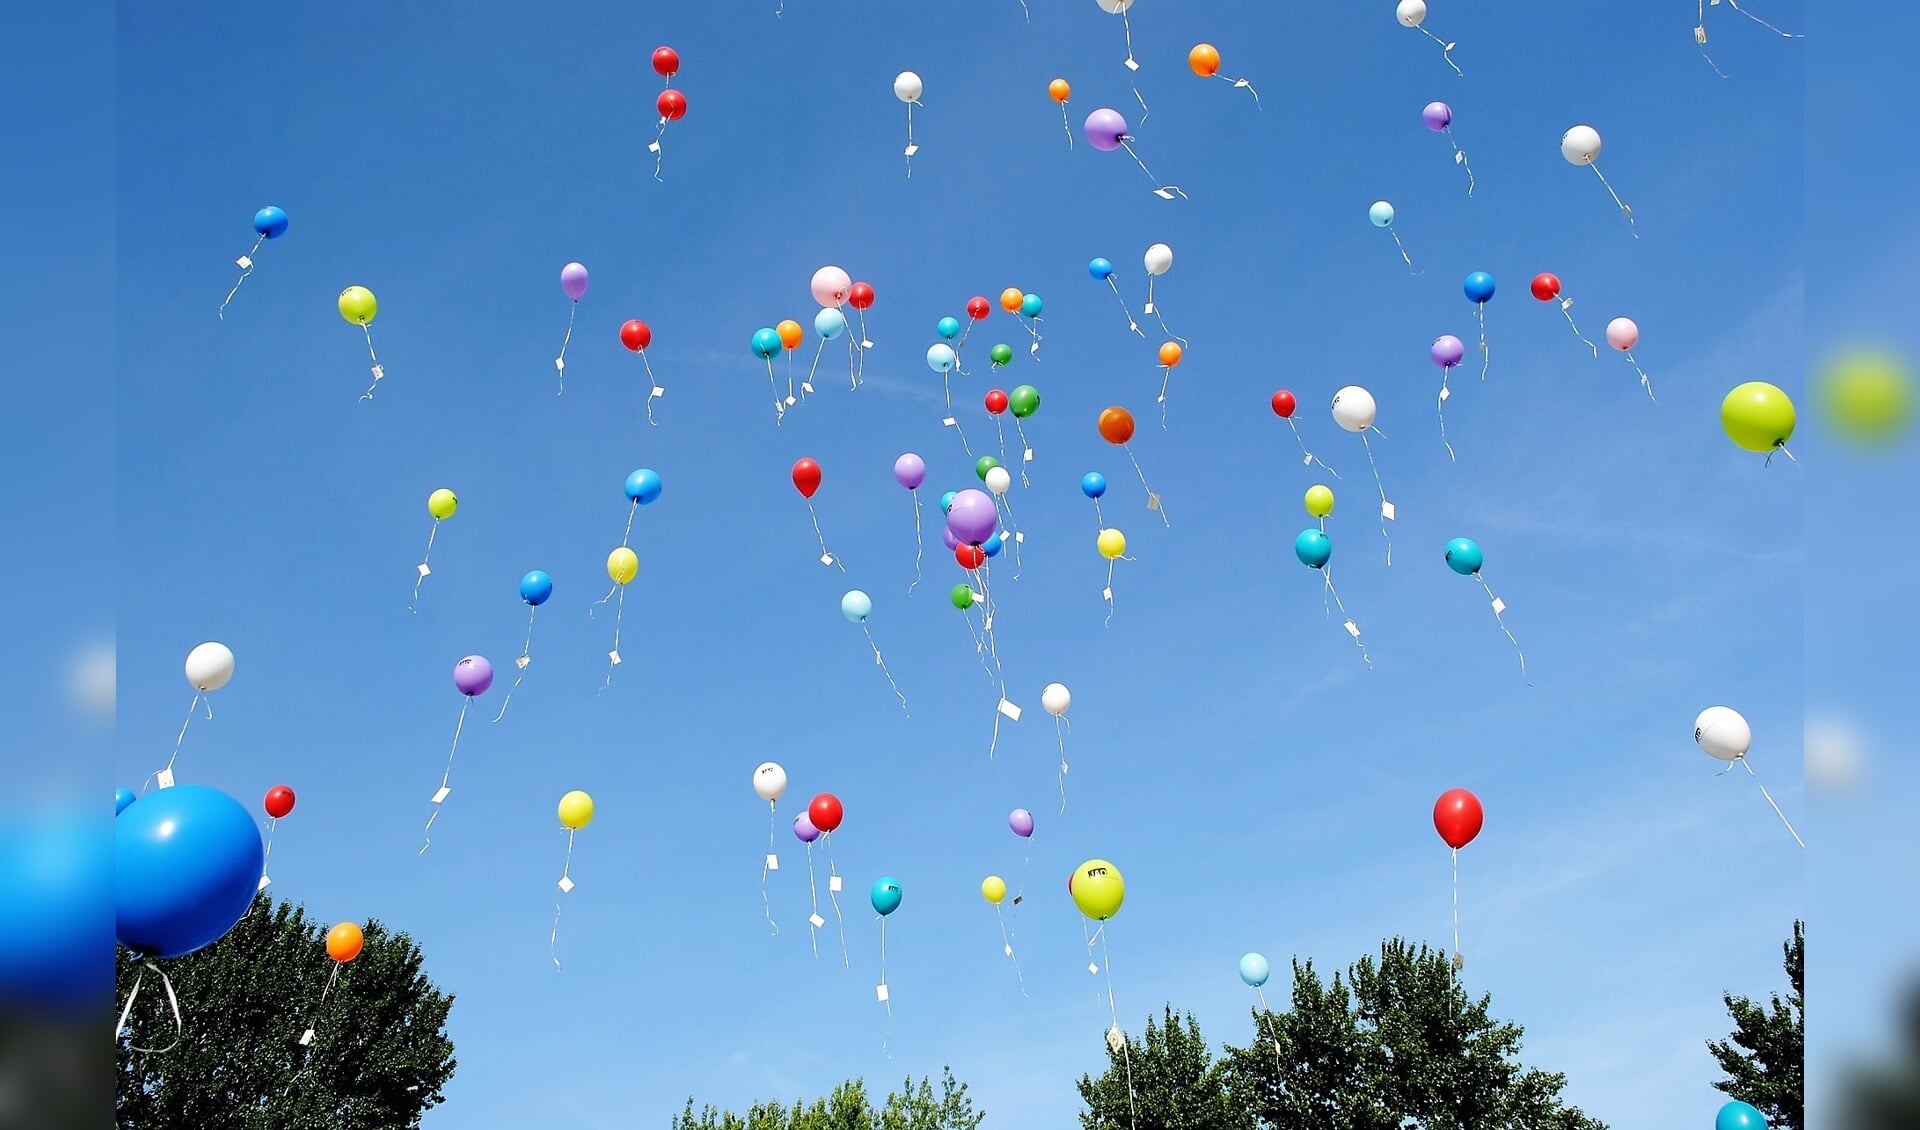 Ballonnen kiezen het luchtruim